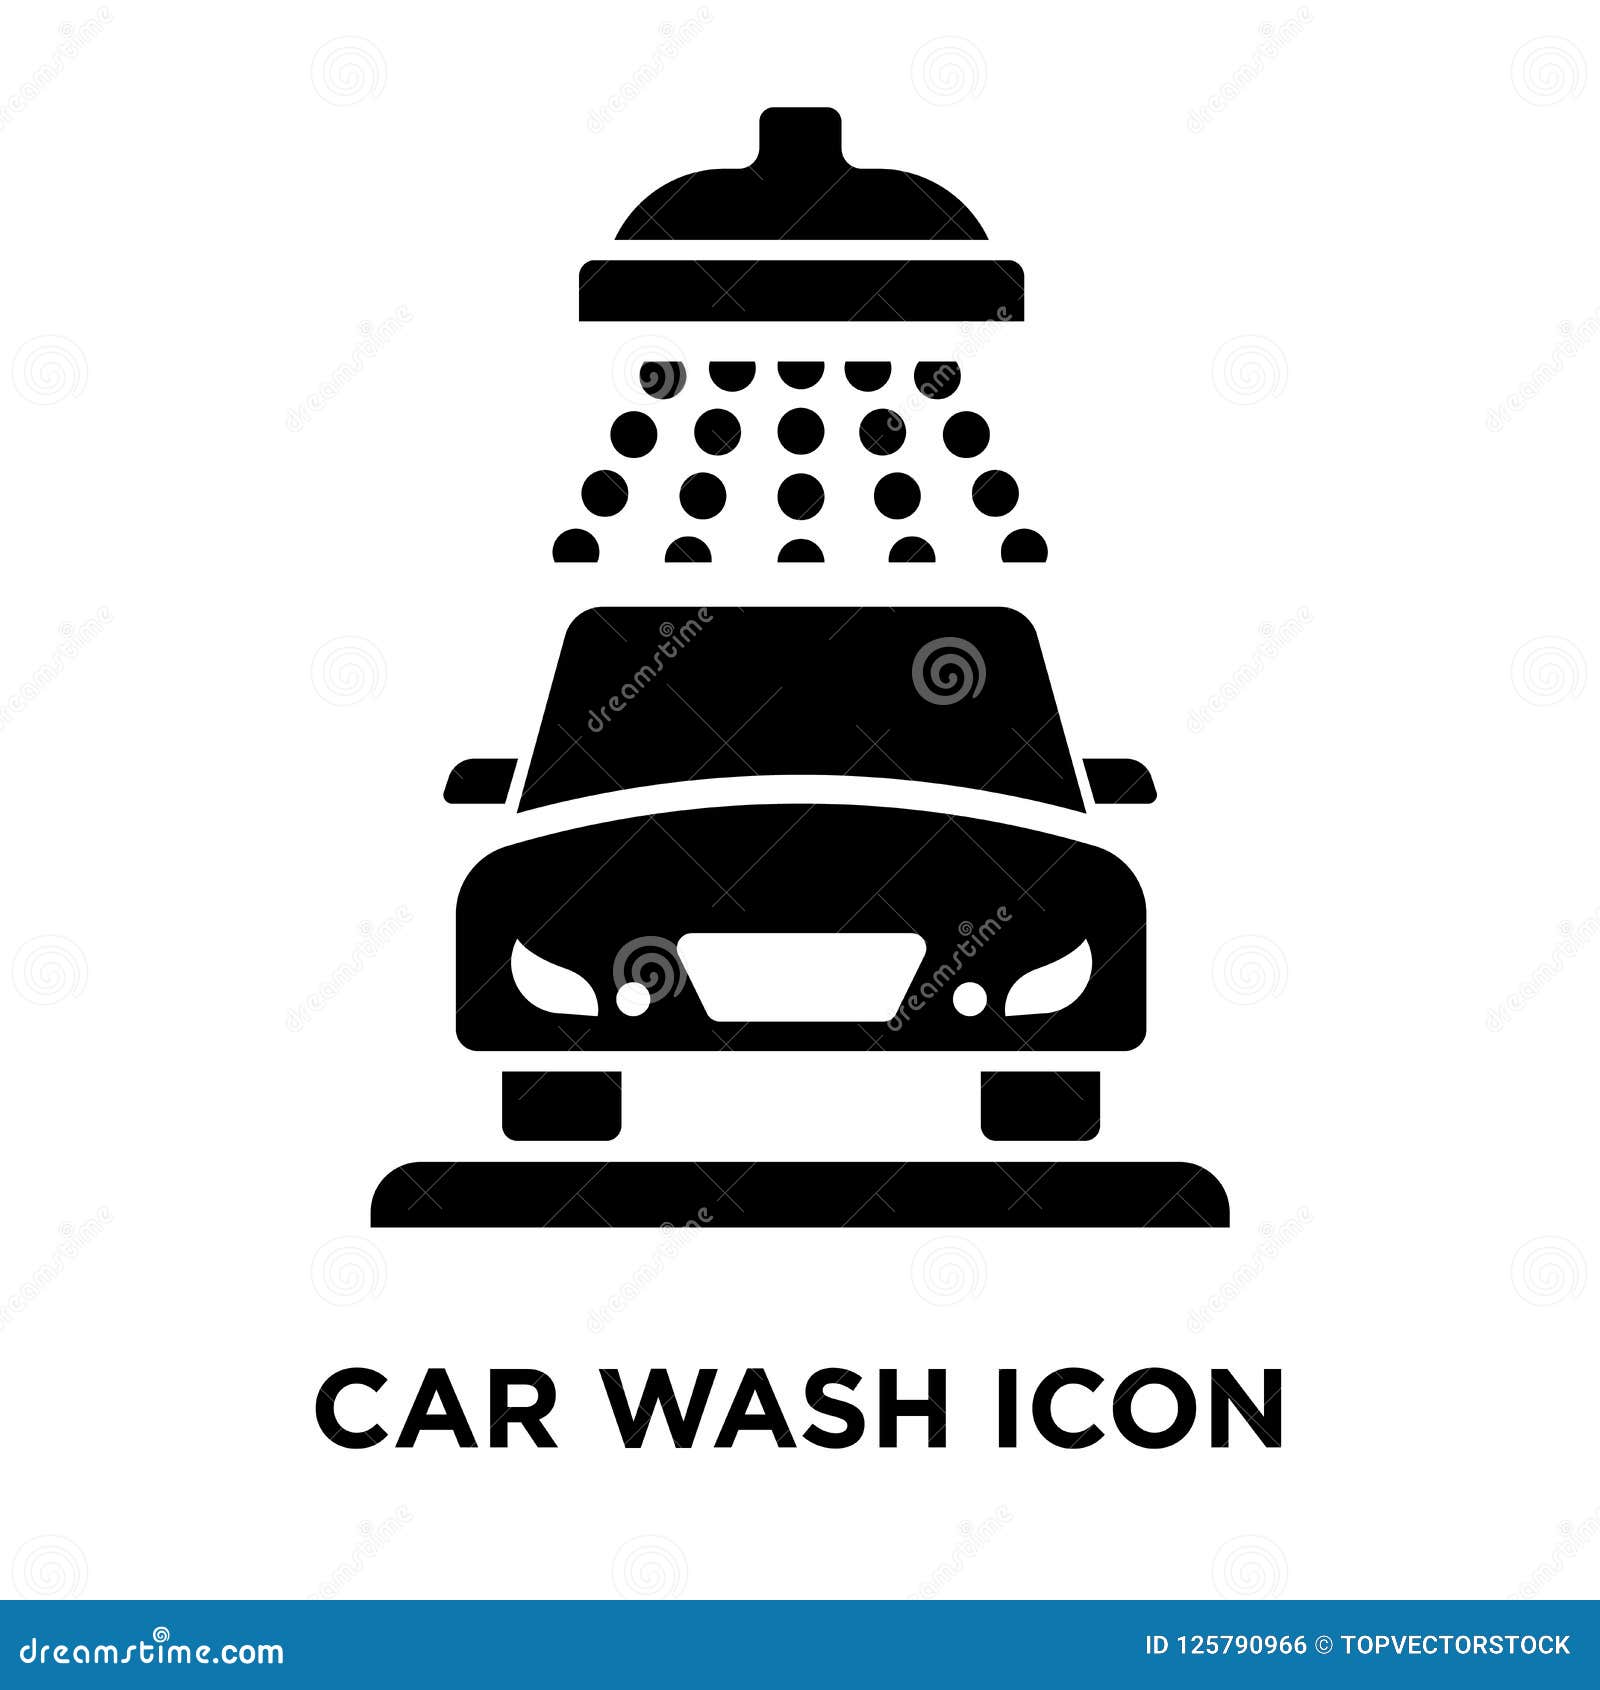 Car wash logo Royalty Free Vector Image - VectorStock